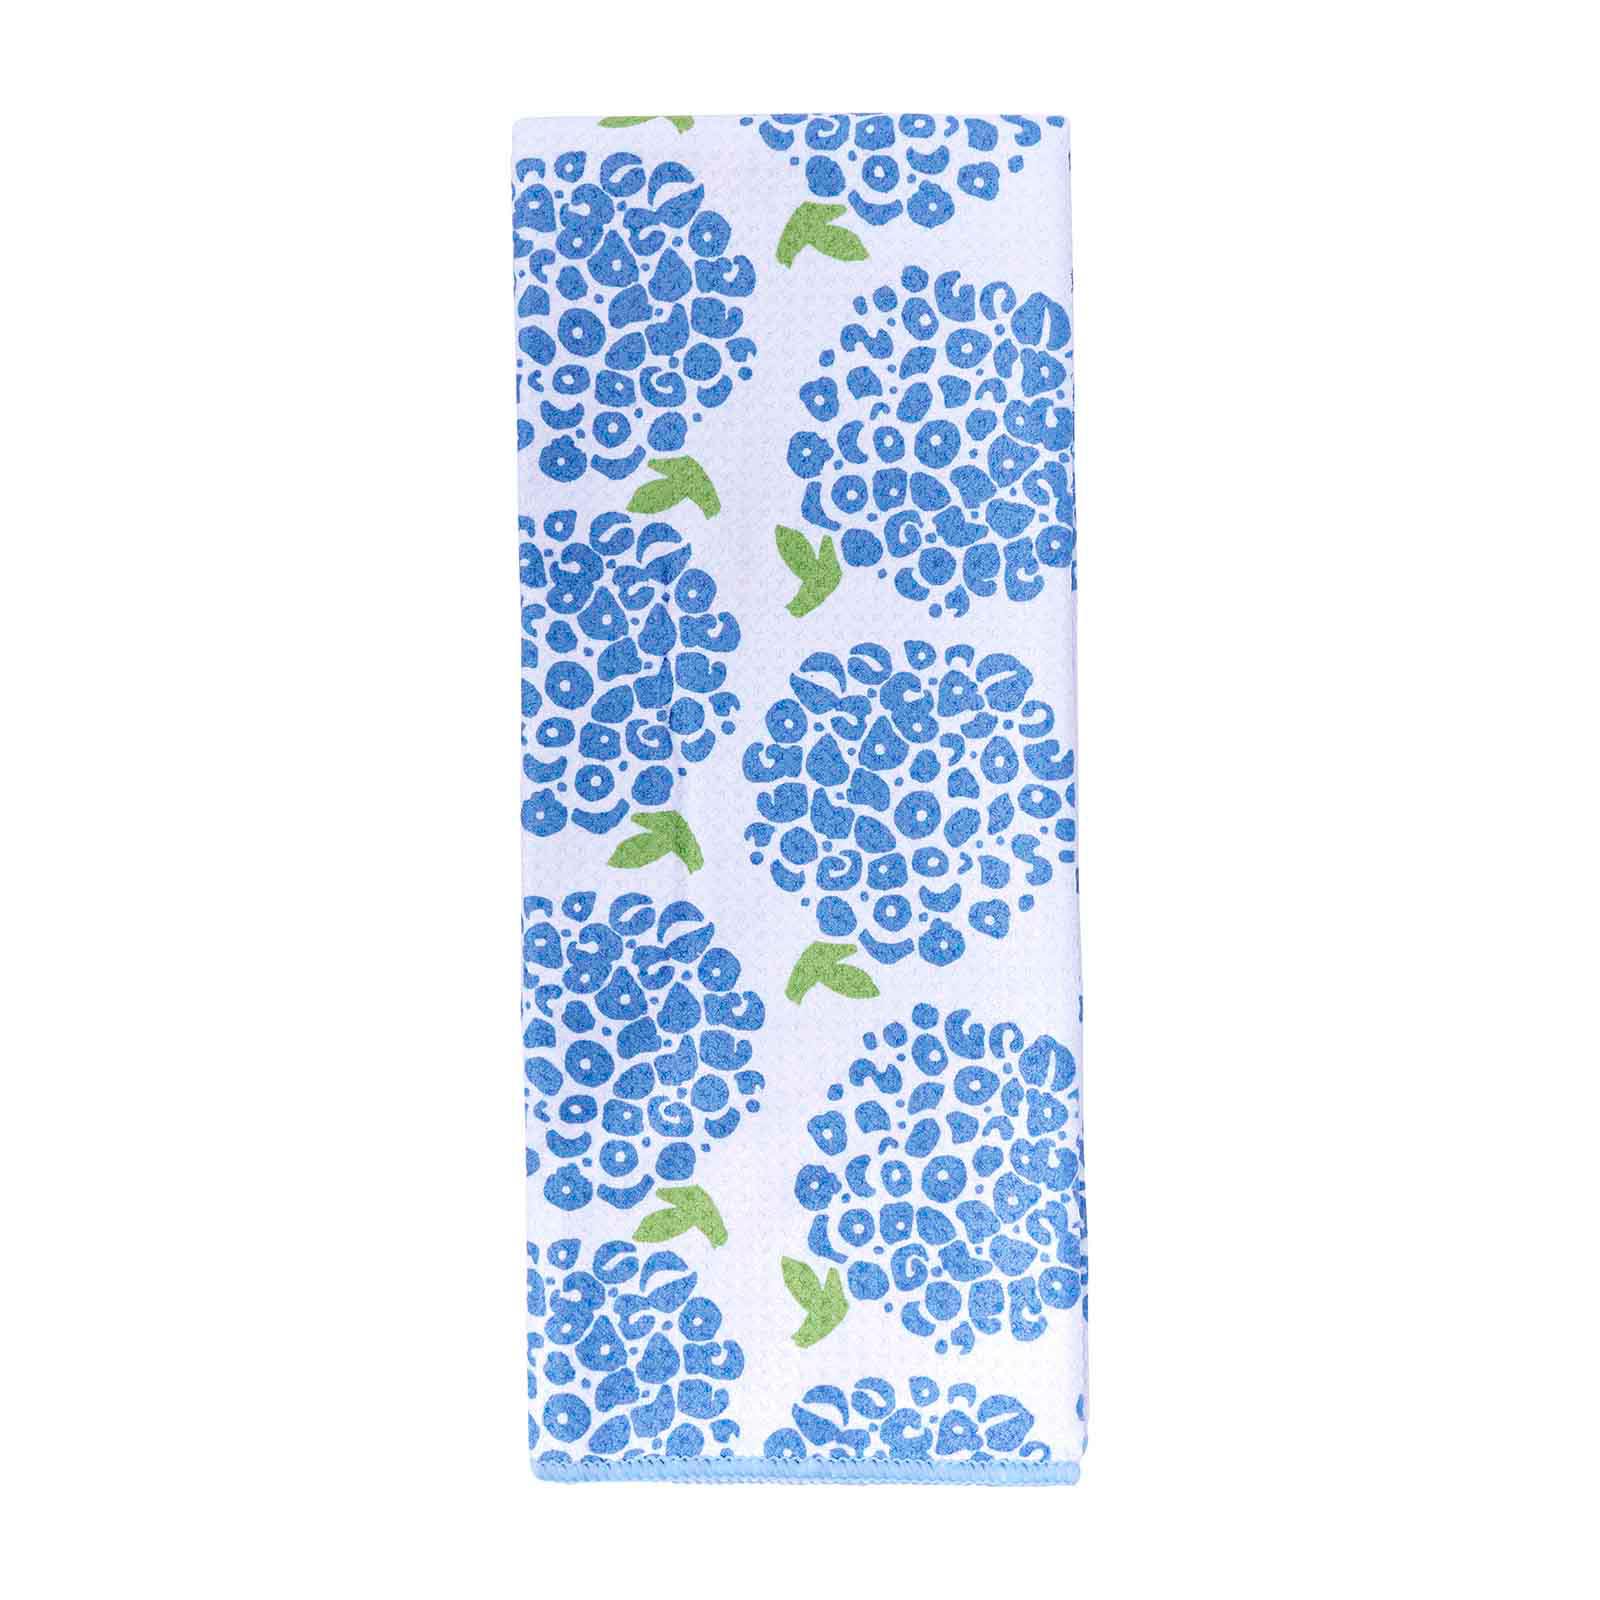 Hydrangea blu Kitchen Tea Towel-Double Side Printed Kitchen Towel - rockflowerpaper